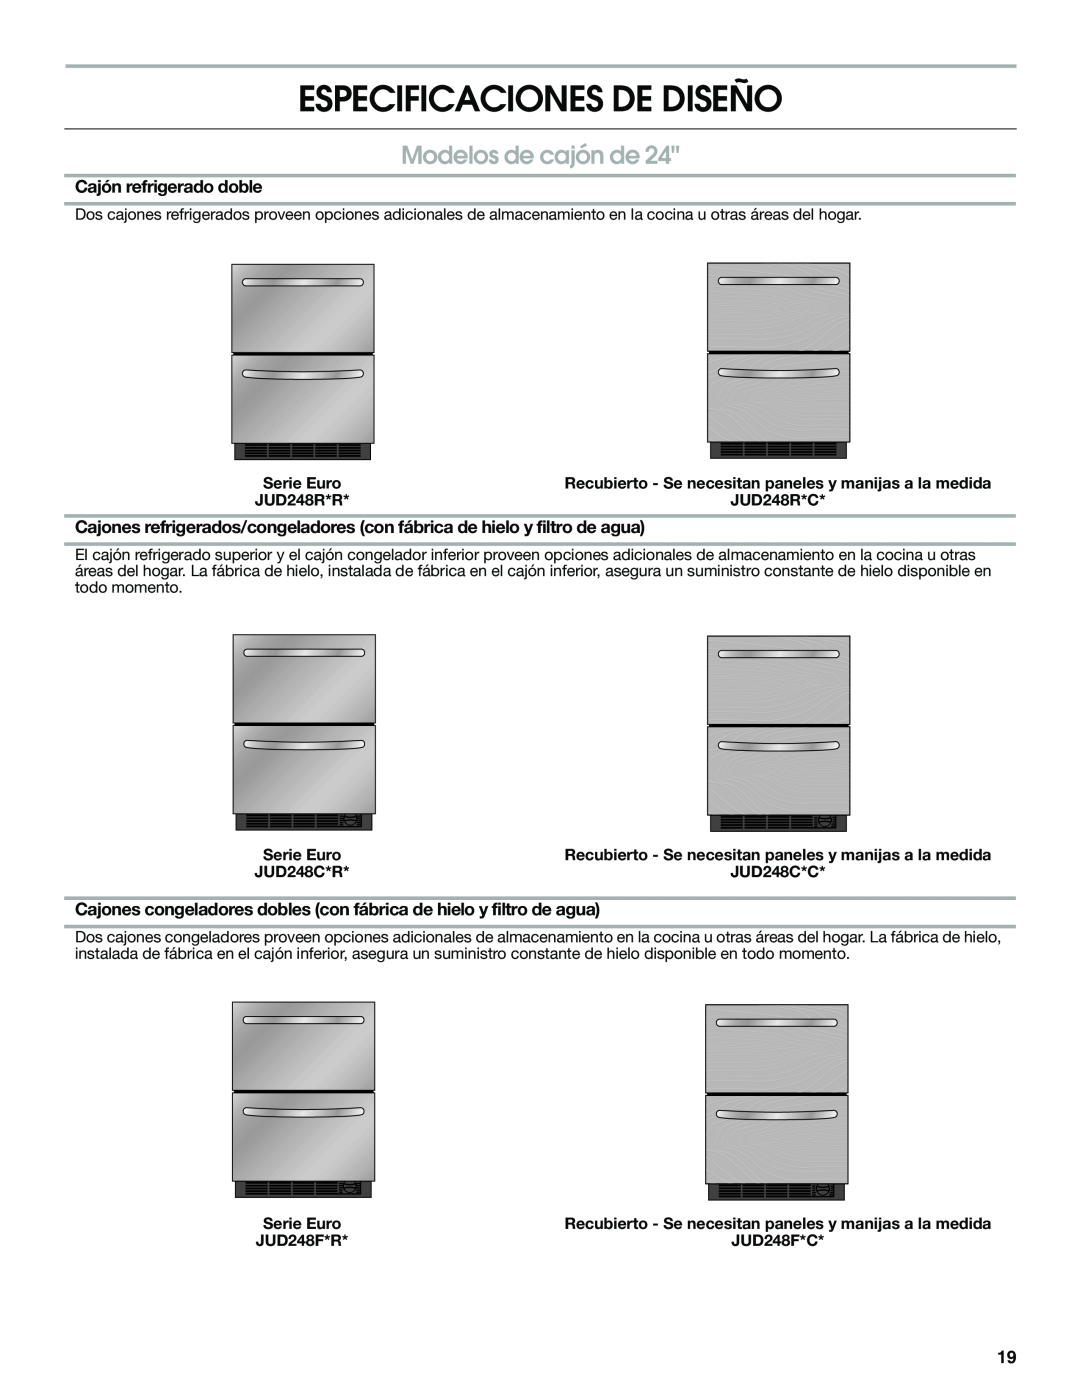 Jenn-Air W10310149A manual Especificaciones De Diseño, Modelos de cajón de, Cajón refrigerado doble 